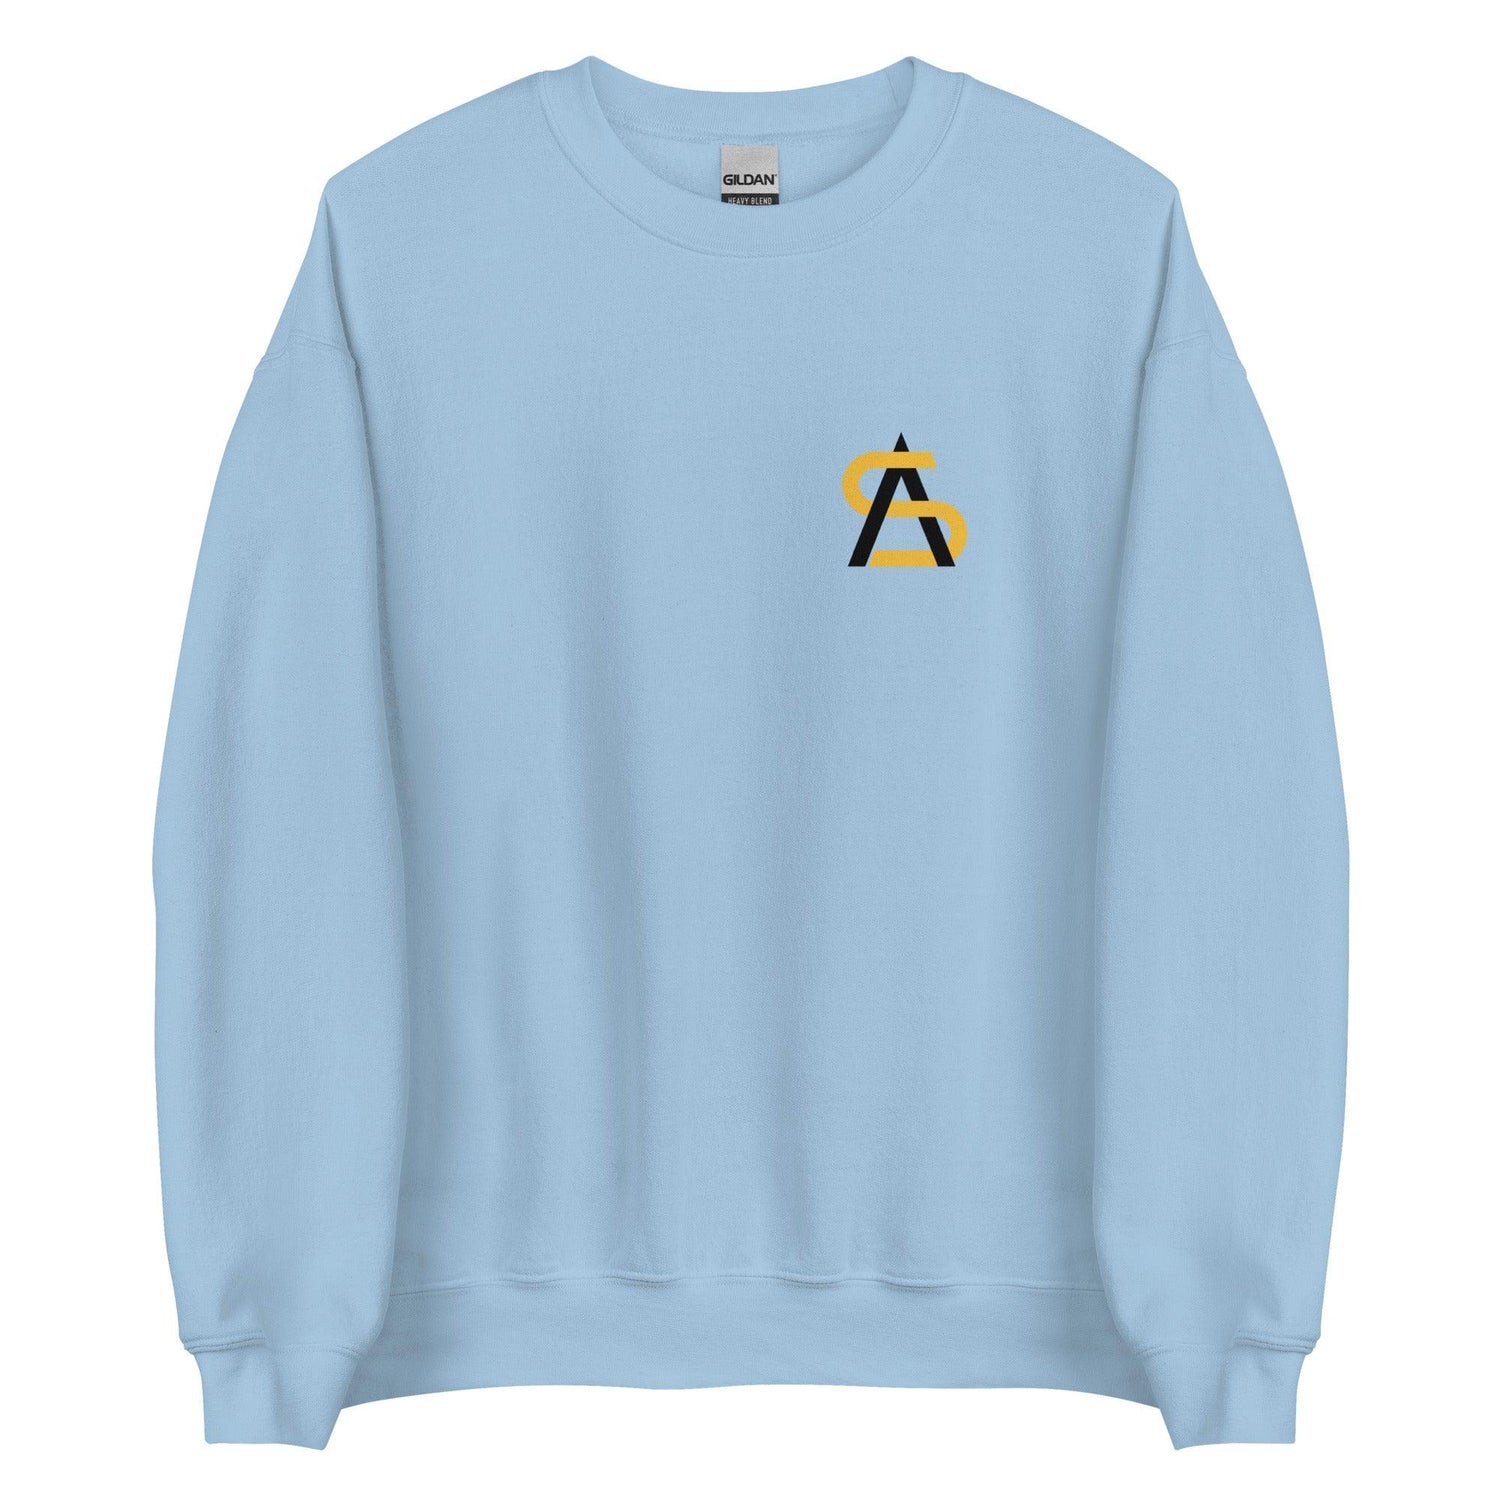 Adam Sparks "Essential" Sweatshirt - Fan Arch